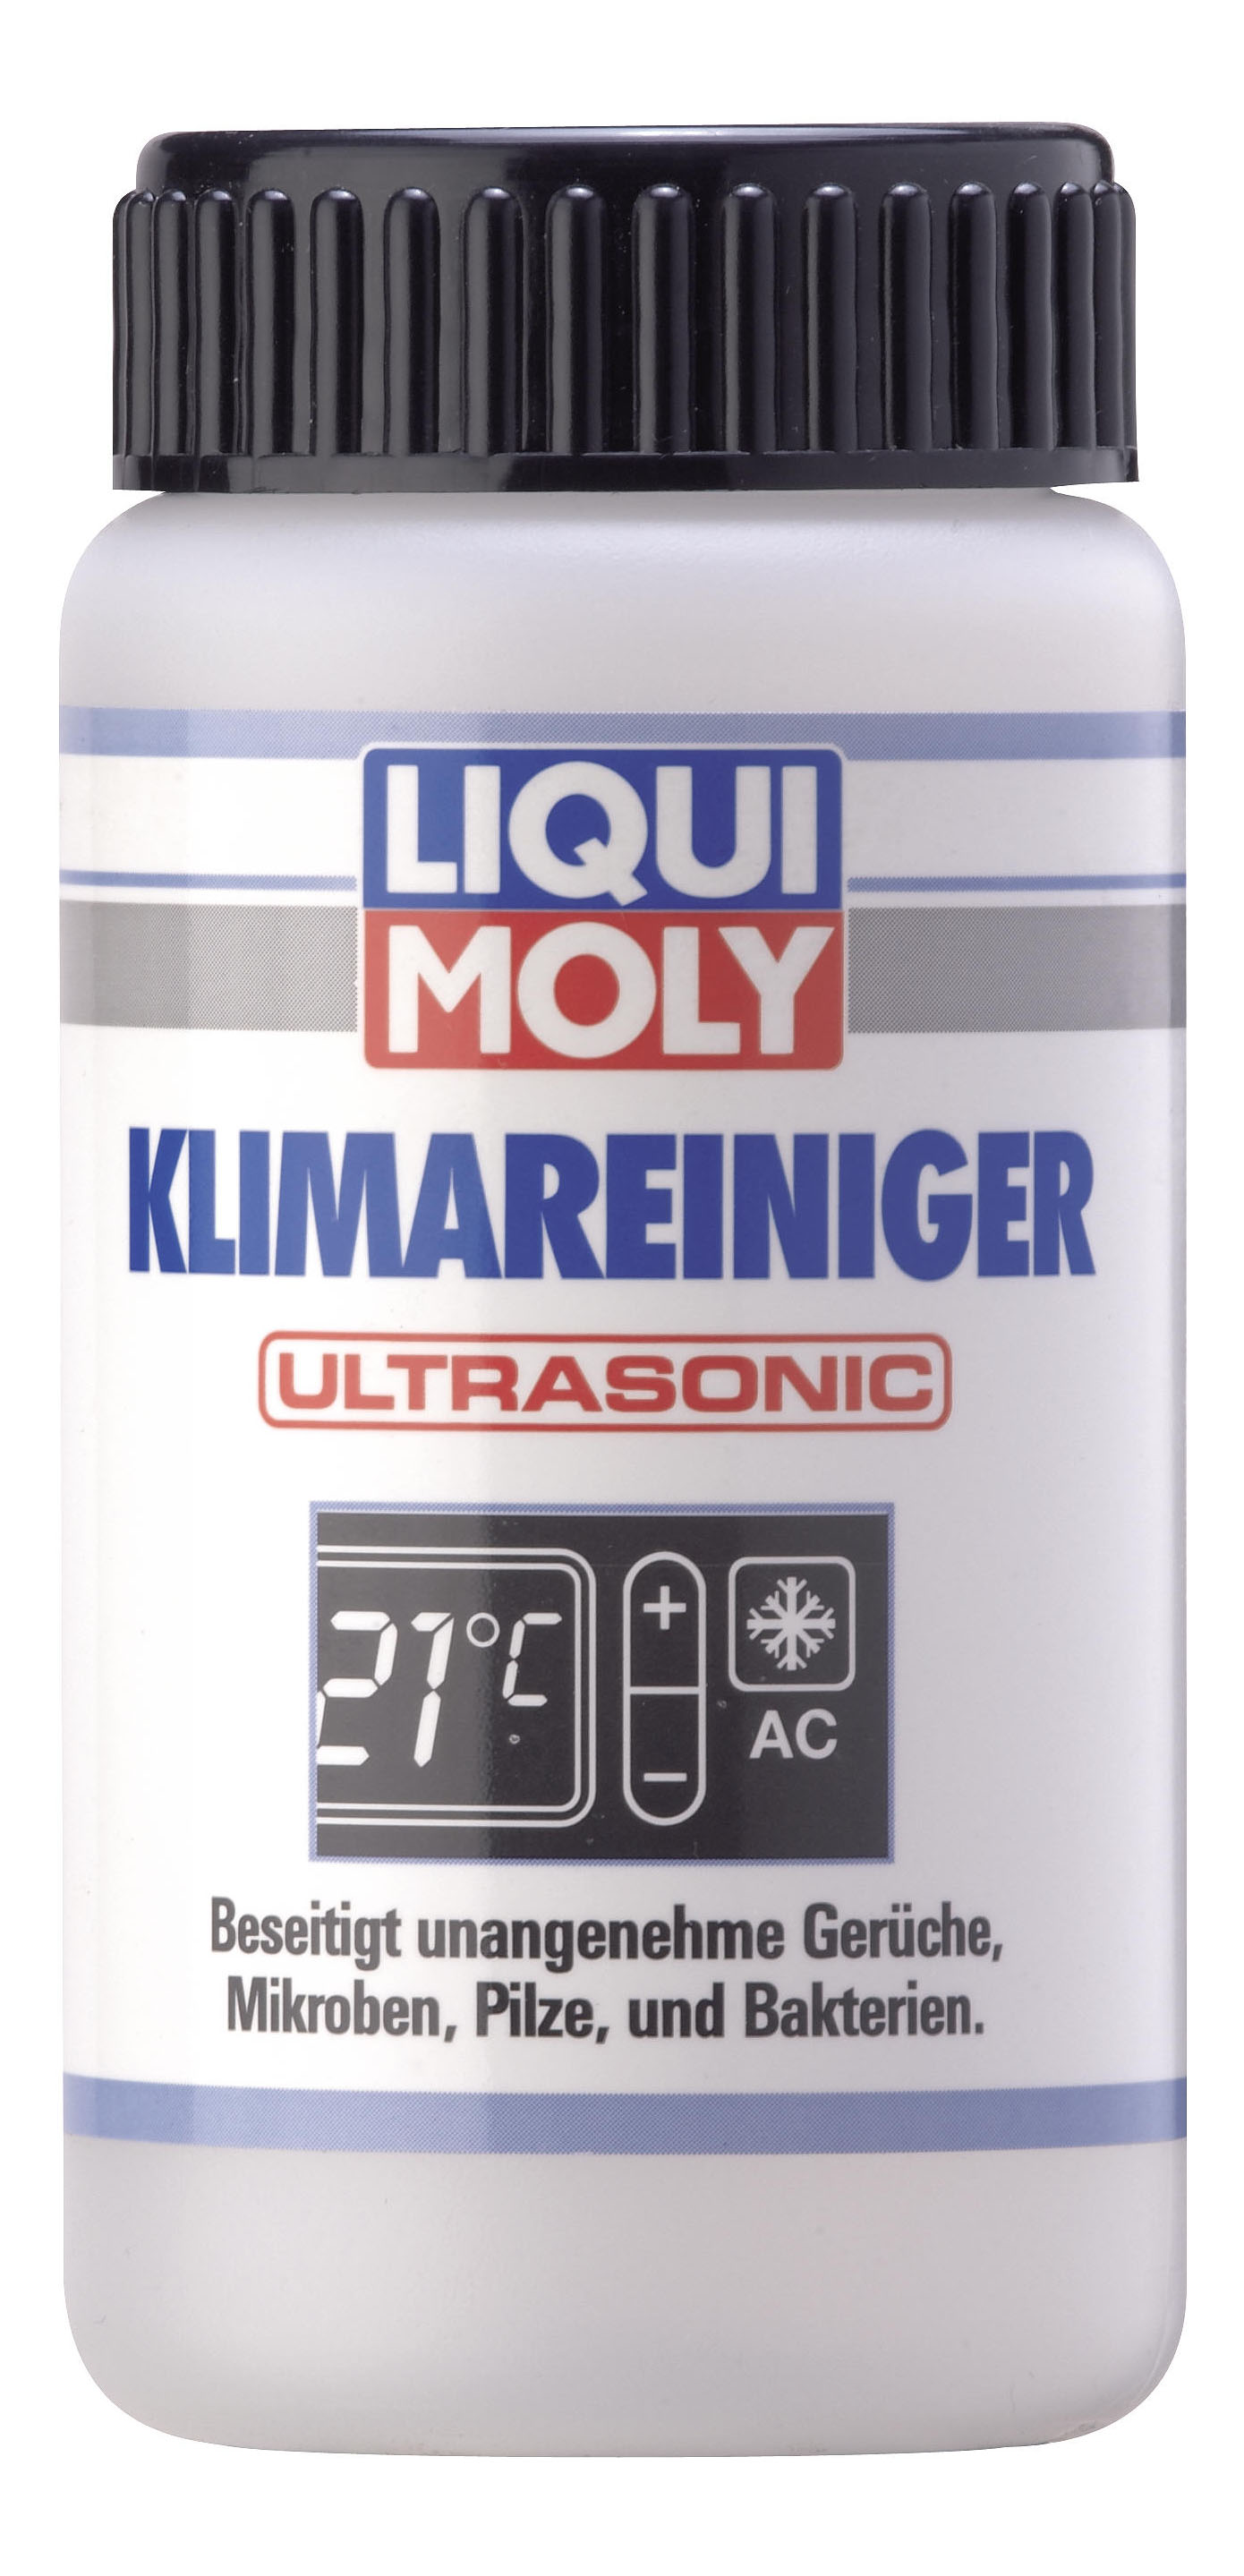 Средство для очистки кондиционера автомобиля LIQUI MOLY Klimareiniger Ultrasonic (4079)